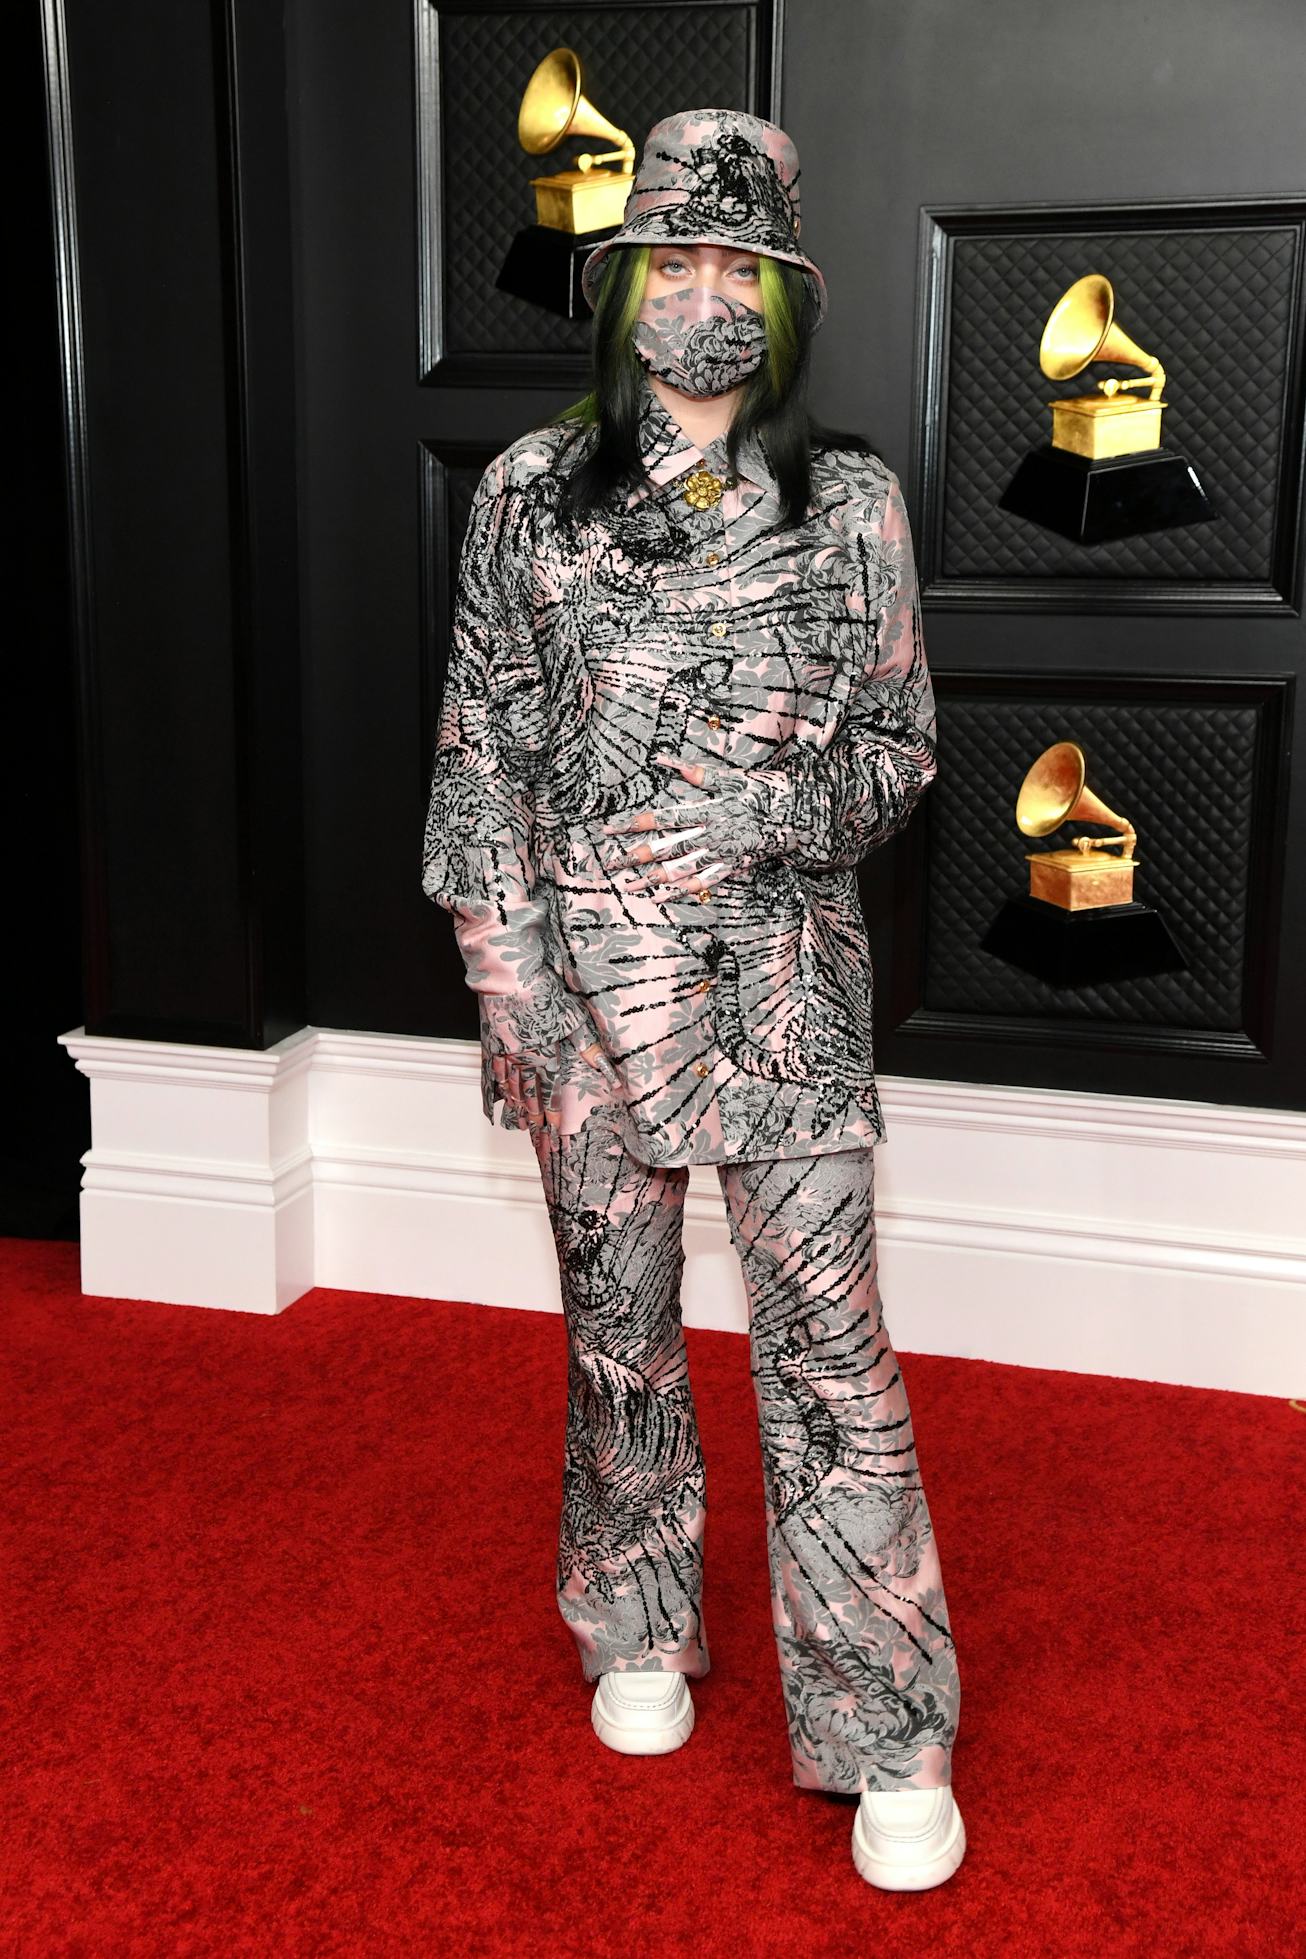 Billie Eilish wearing Gucci at the 2021 Grammys.